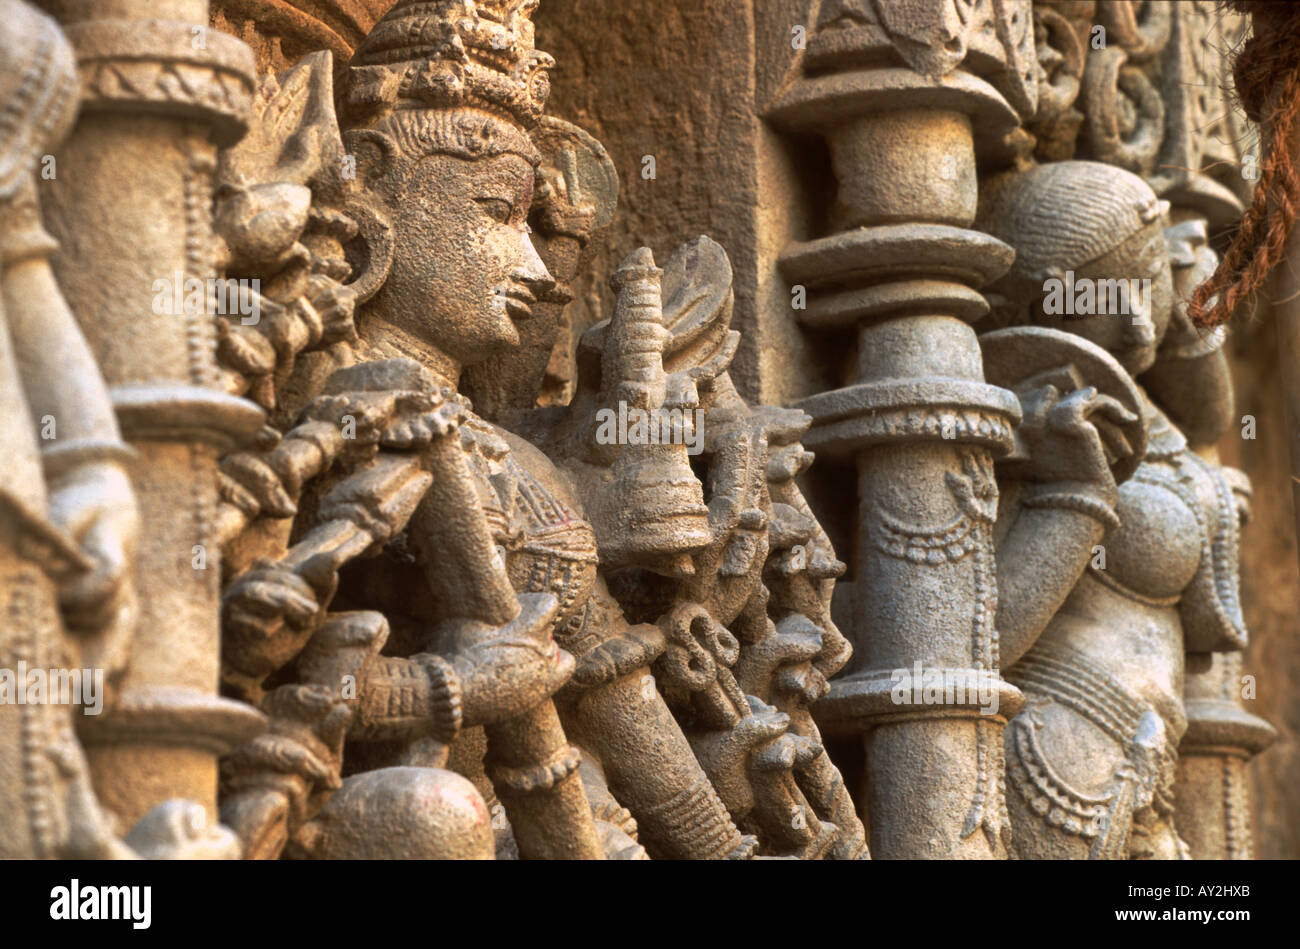 Figures de pierre sculptée, Patan étape puits appelé le Rani ki Vav, Gujarat, Inde. Construit autour de 1050 A.D. Banque D'Images